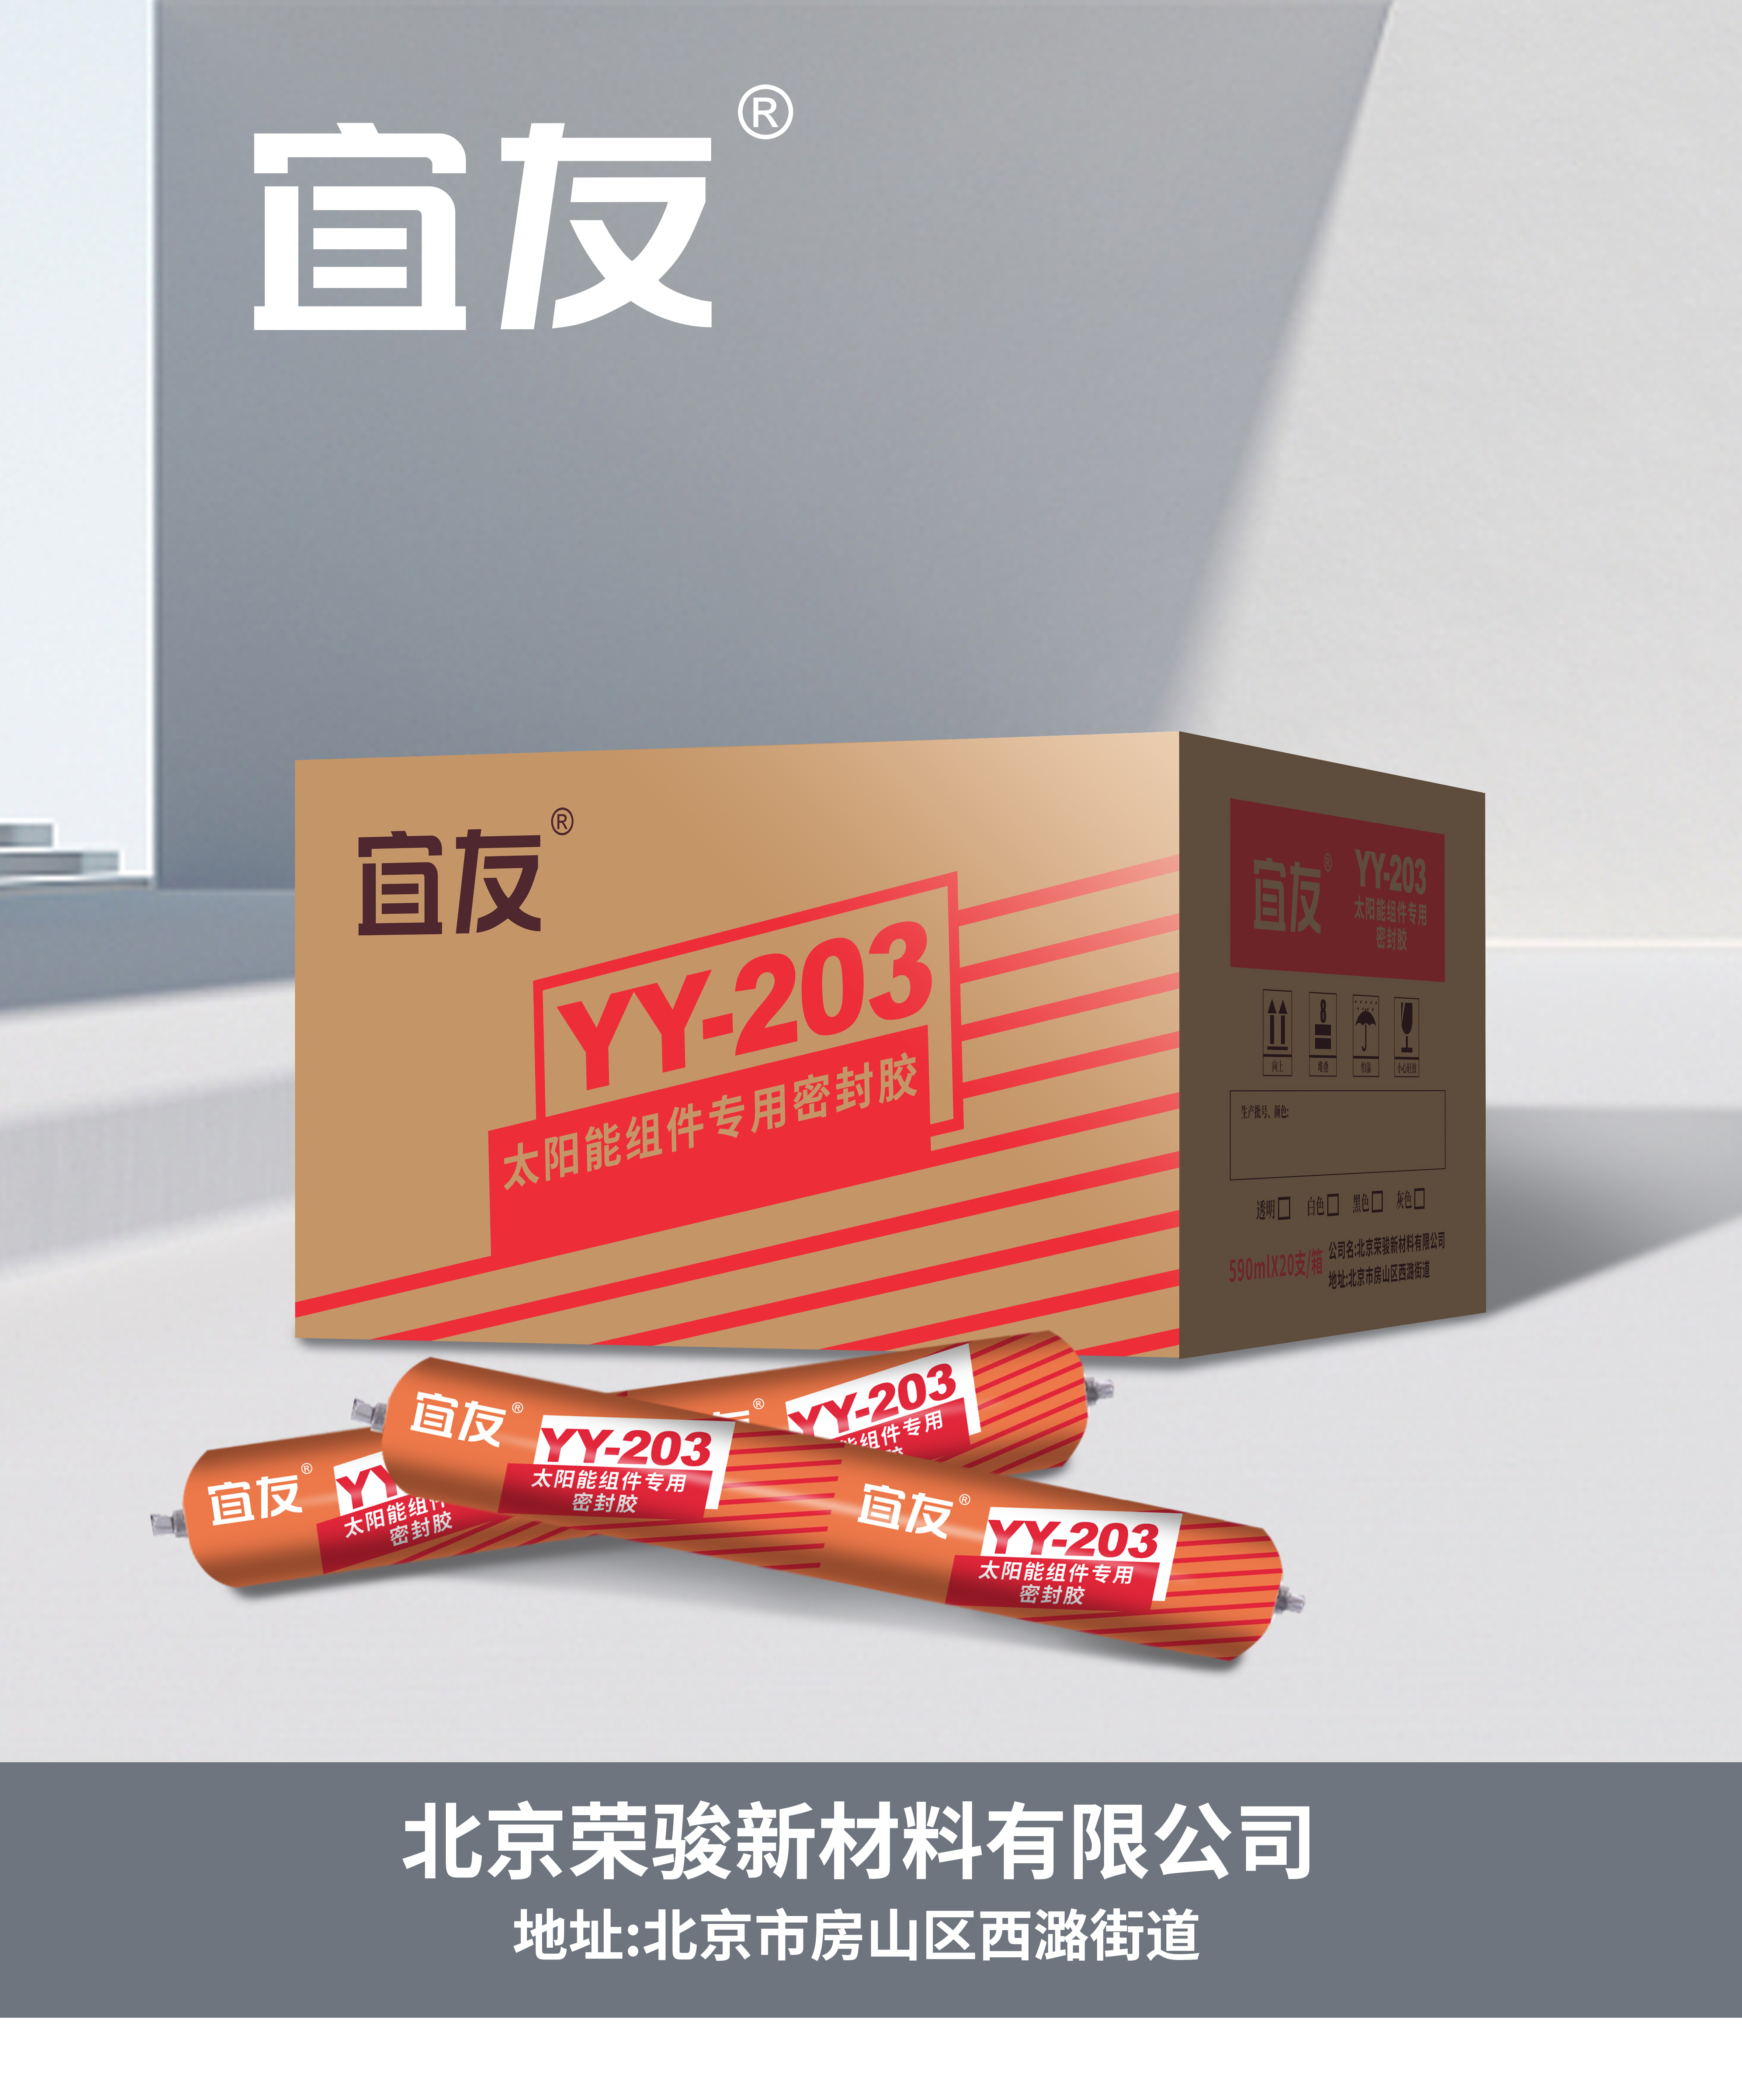 YY-203太陽能組件專用密封膠